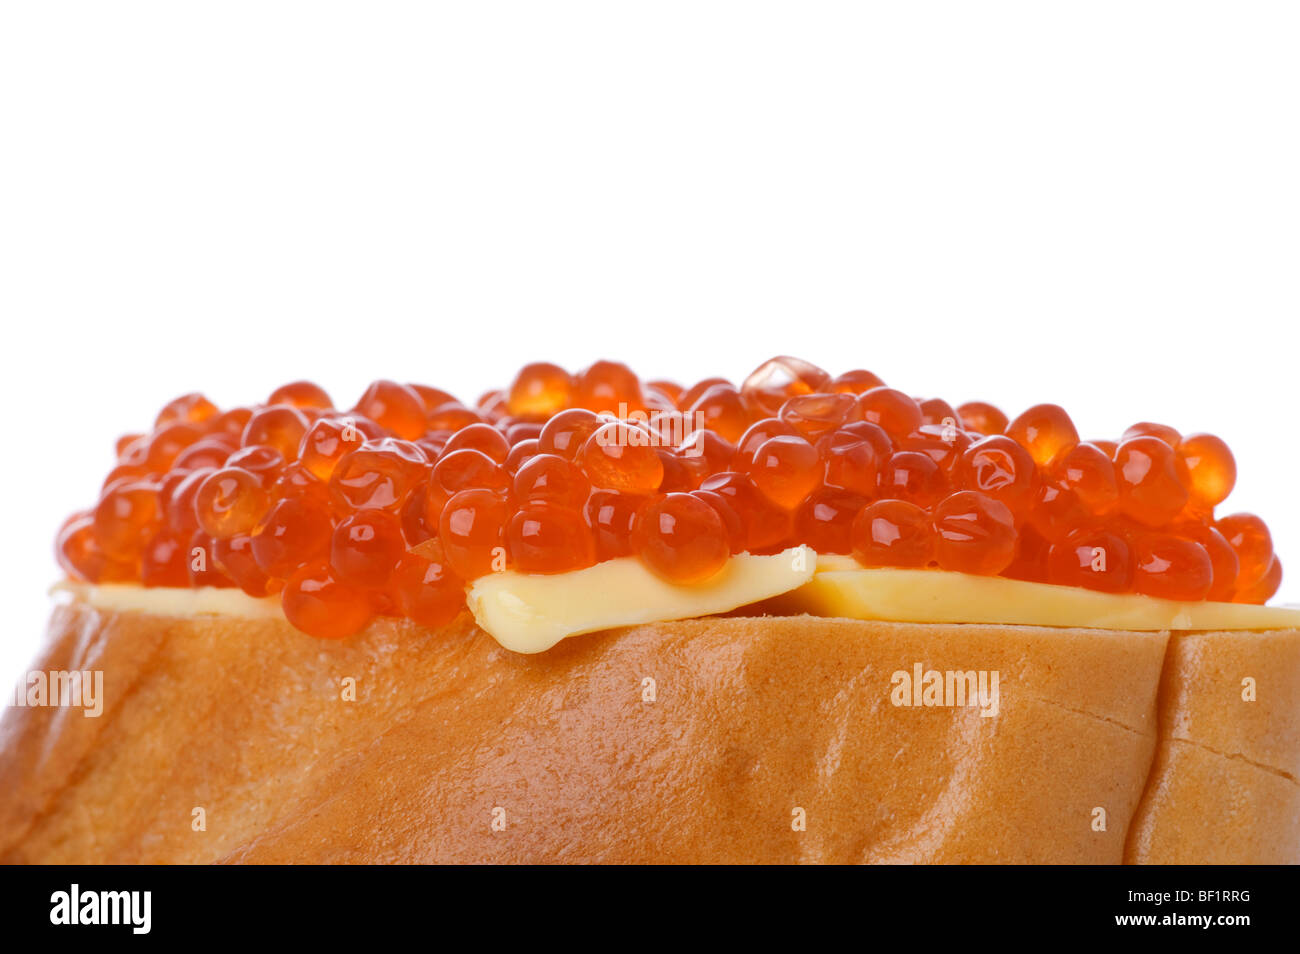 Objekt auf weiß - rotem Kaviar mit Brot Stockfoto